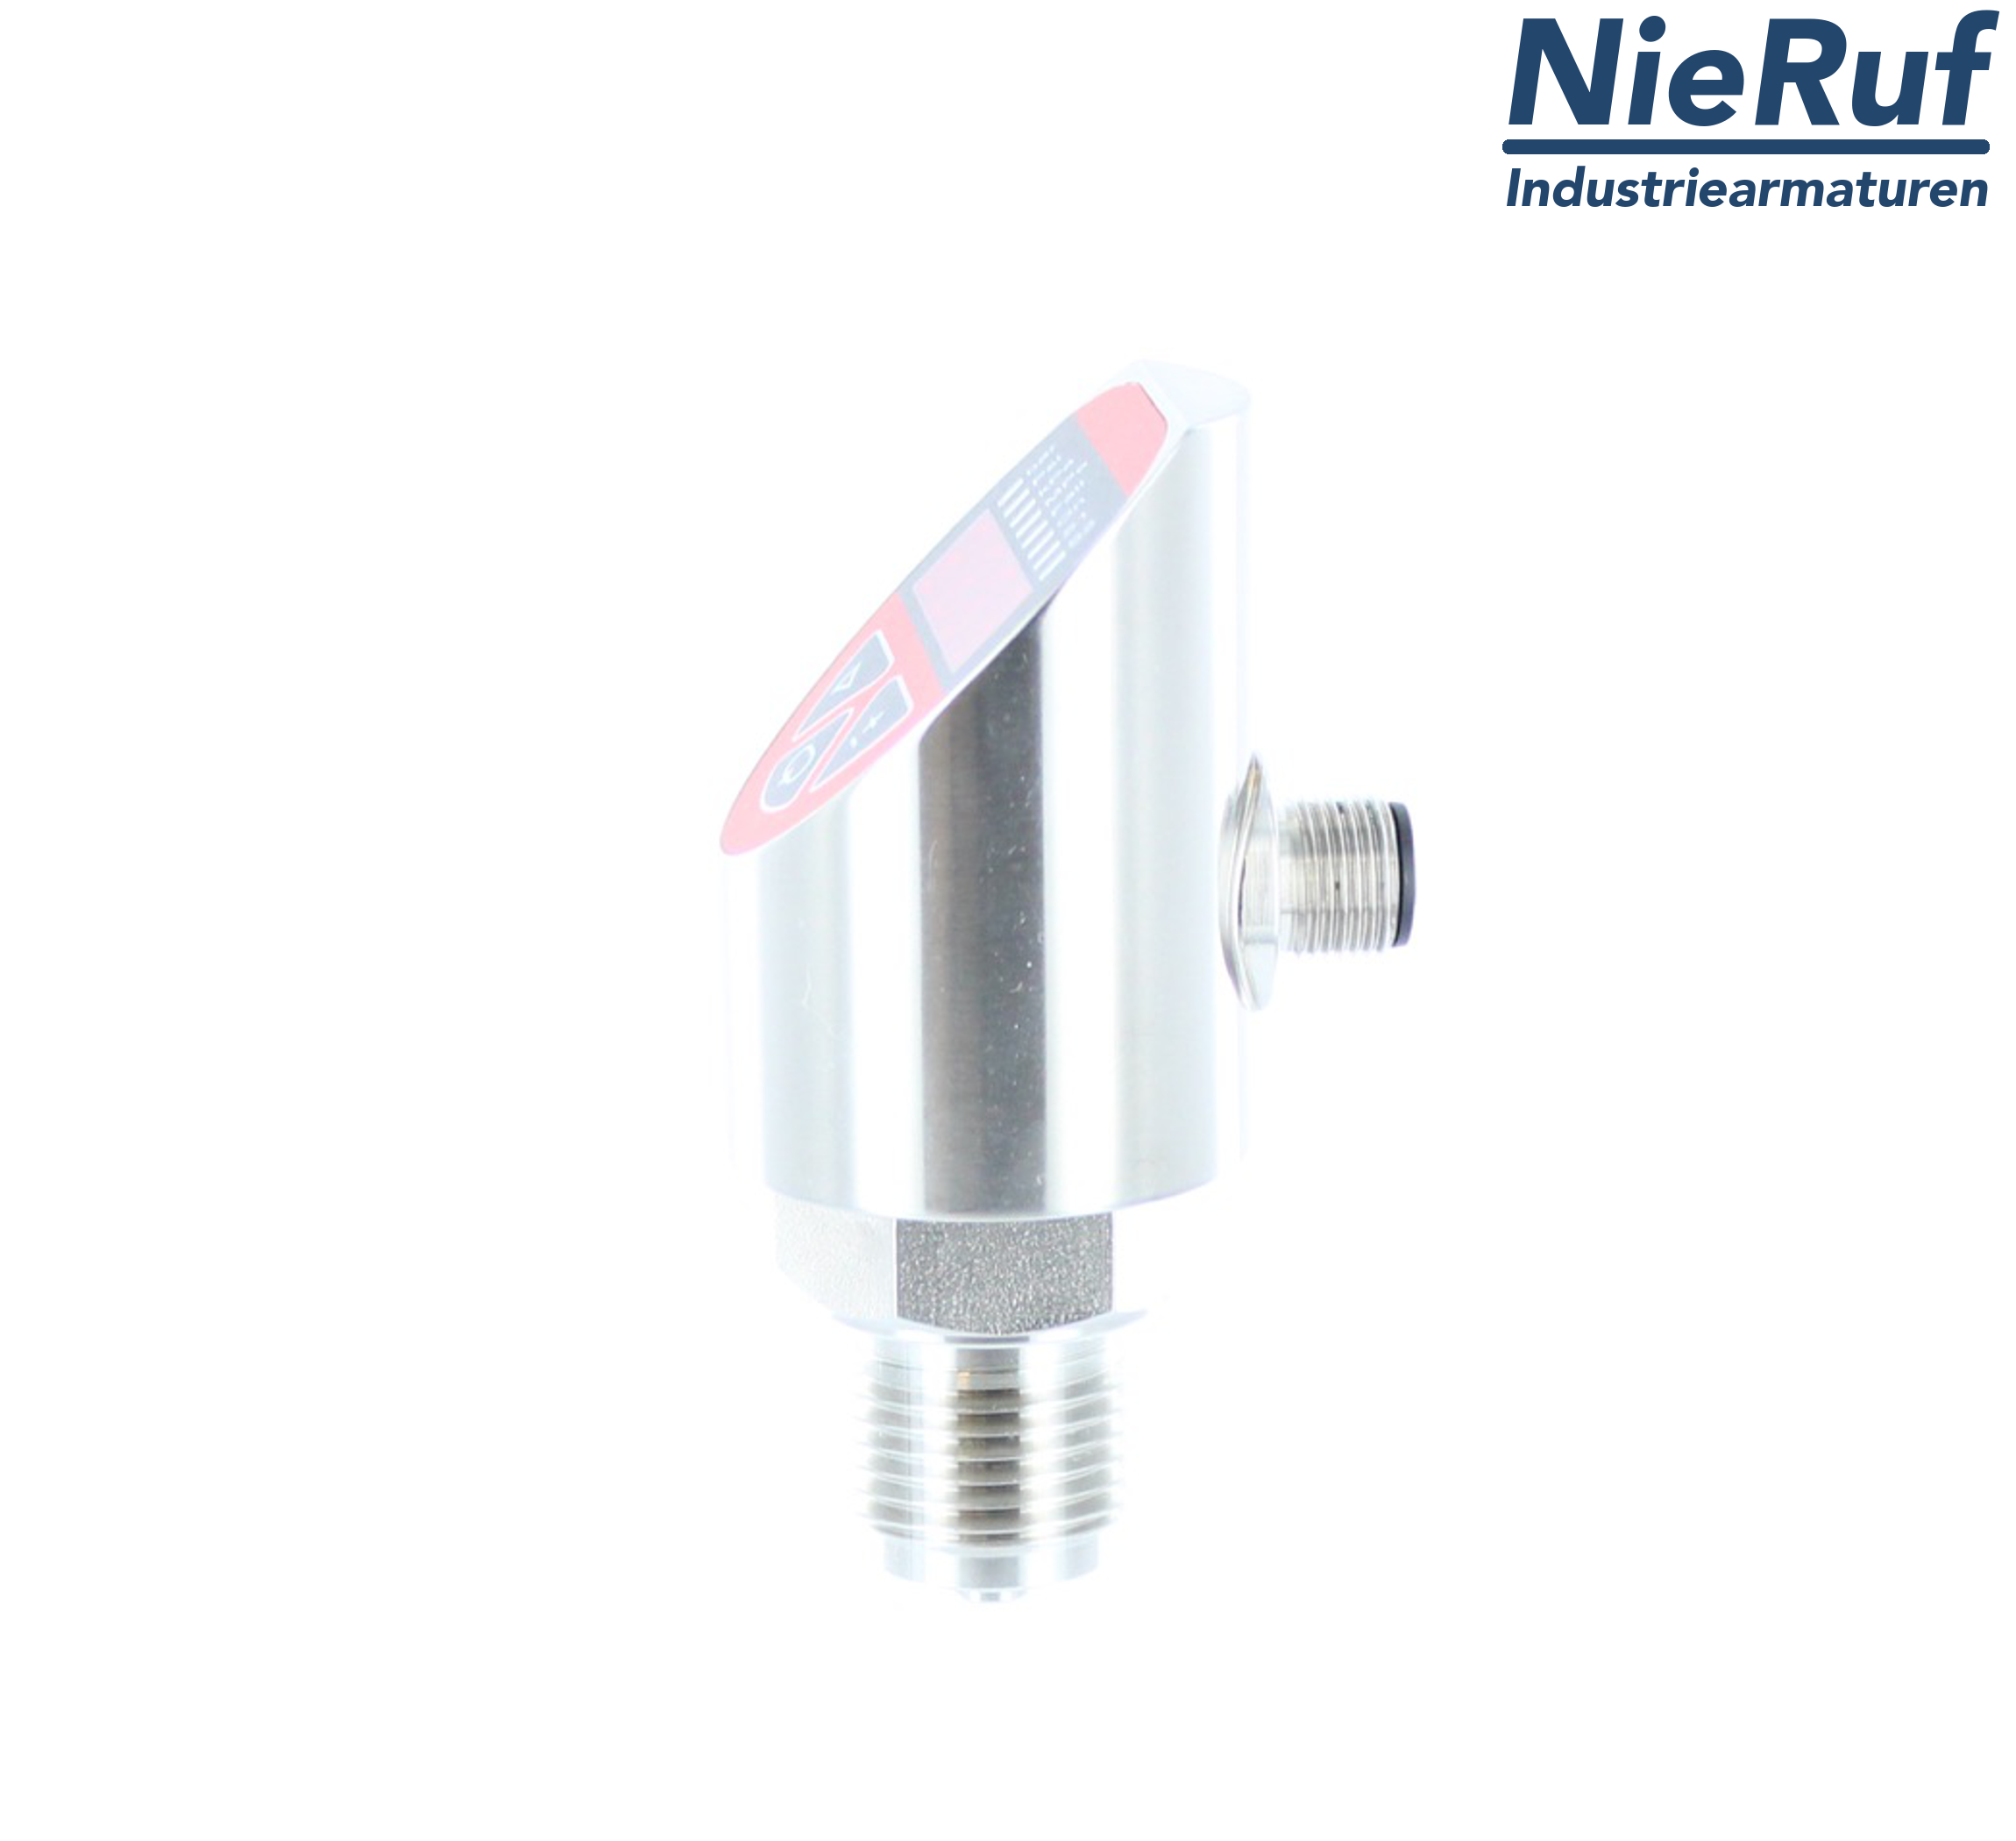 digital pressure sensor G 1/4" B 4-wire: 1xPNP, 1x4 - 20mA, Desina FPM 0,0 - 320,0 bar